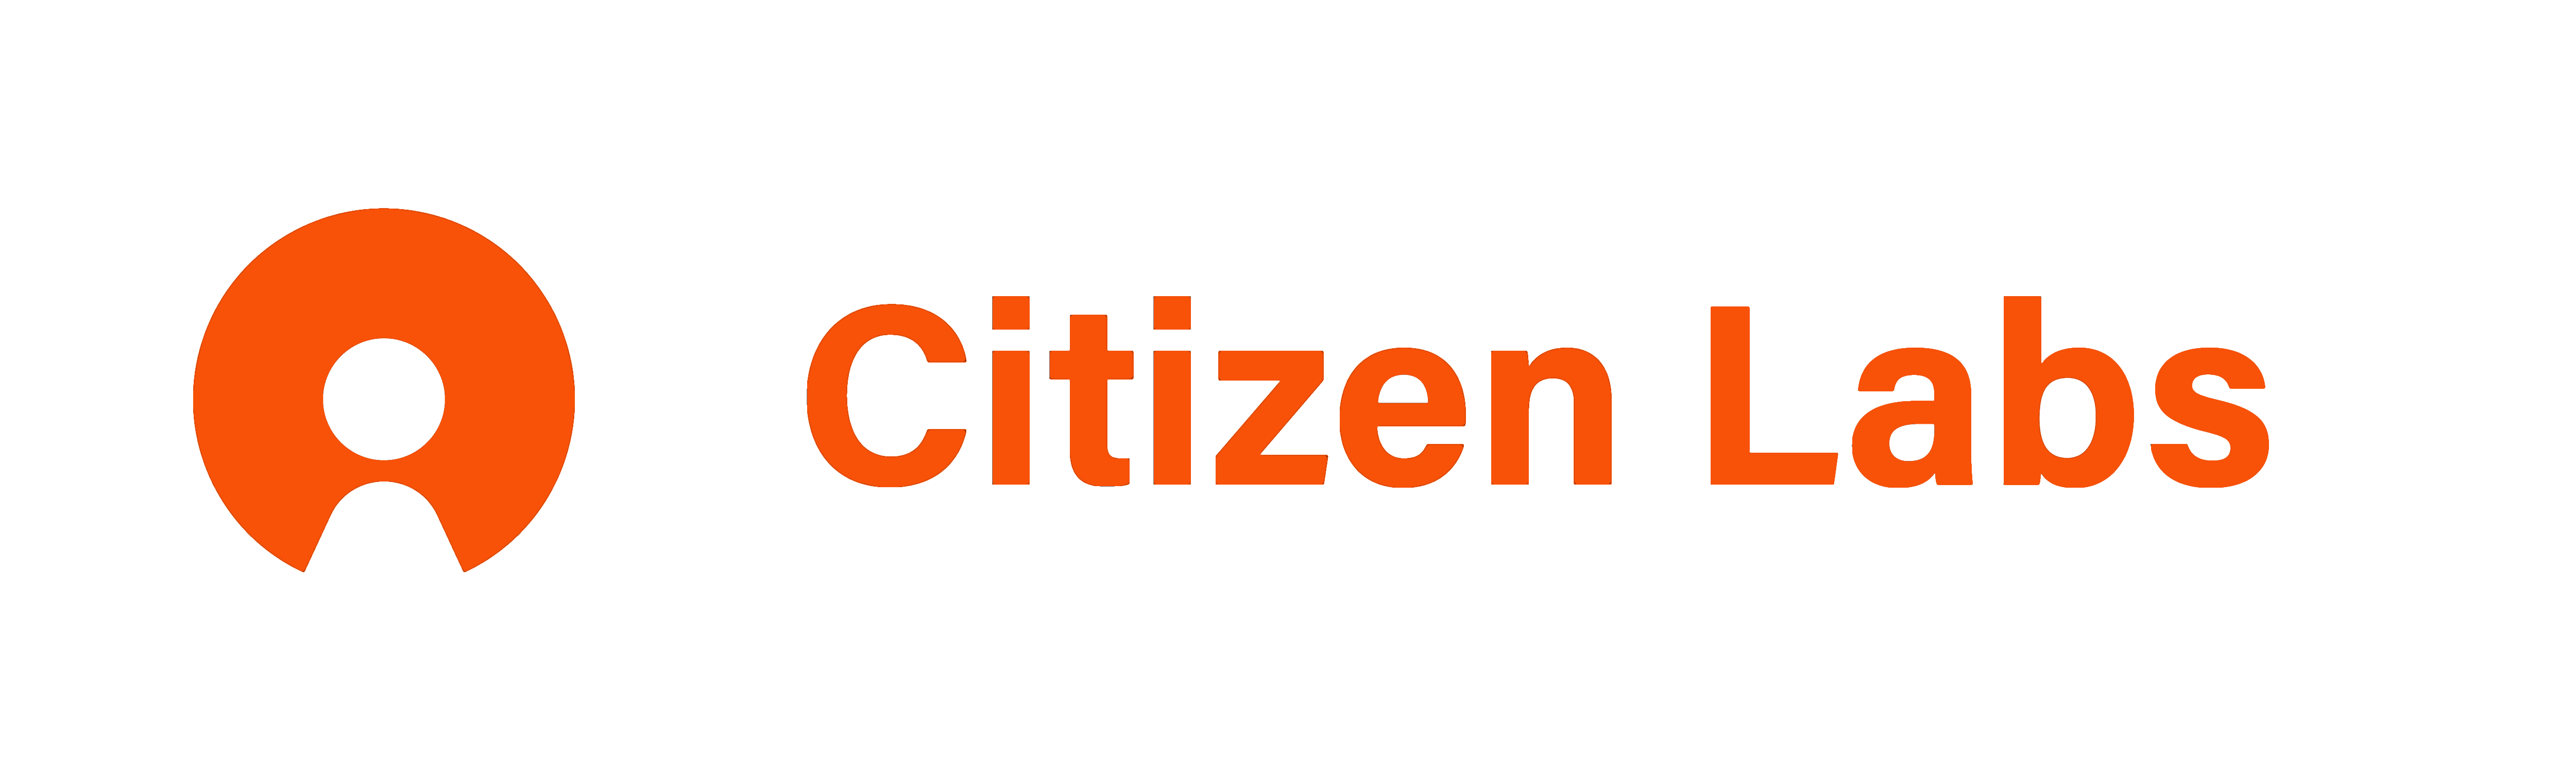 Citizen Labs